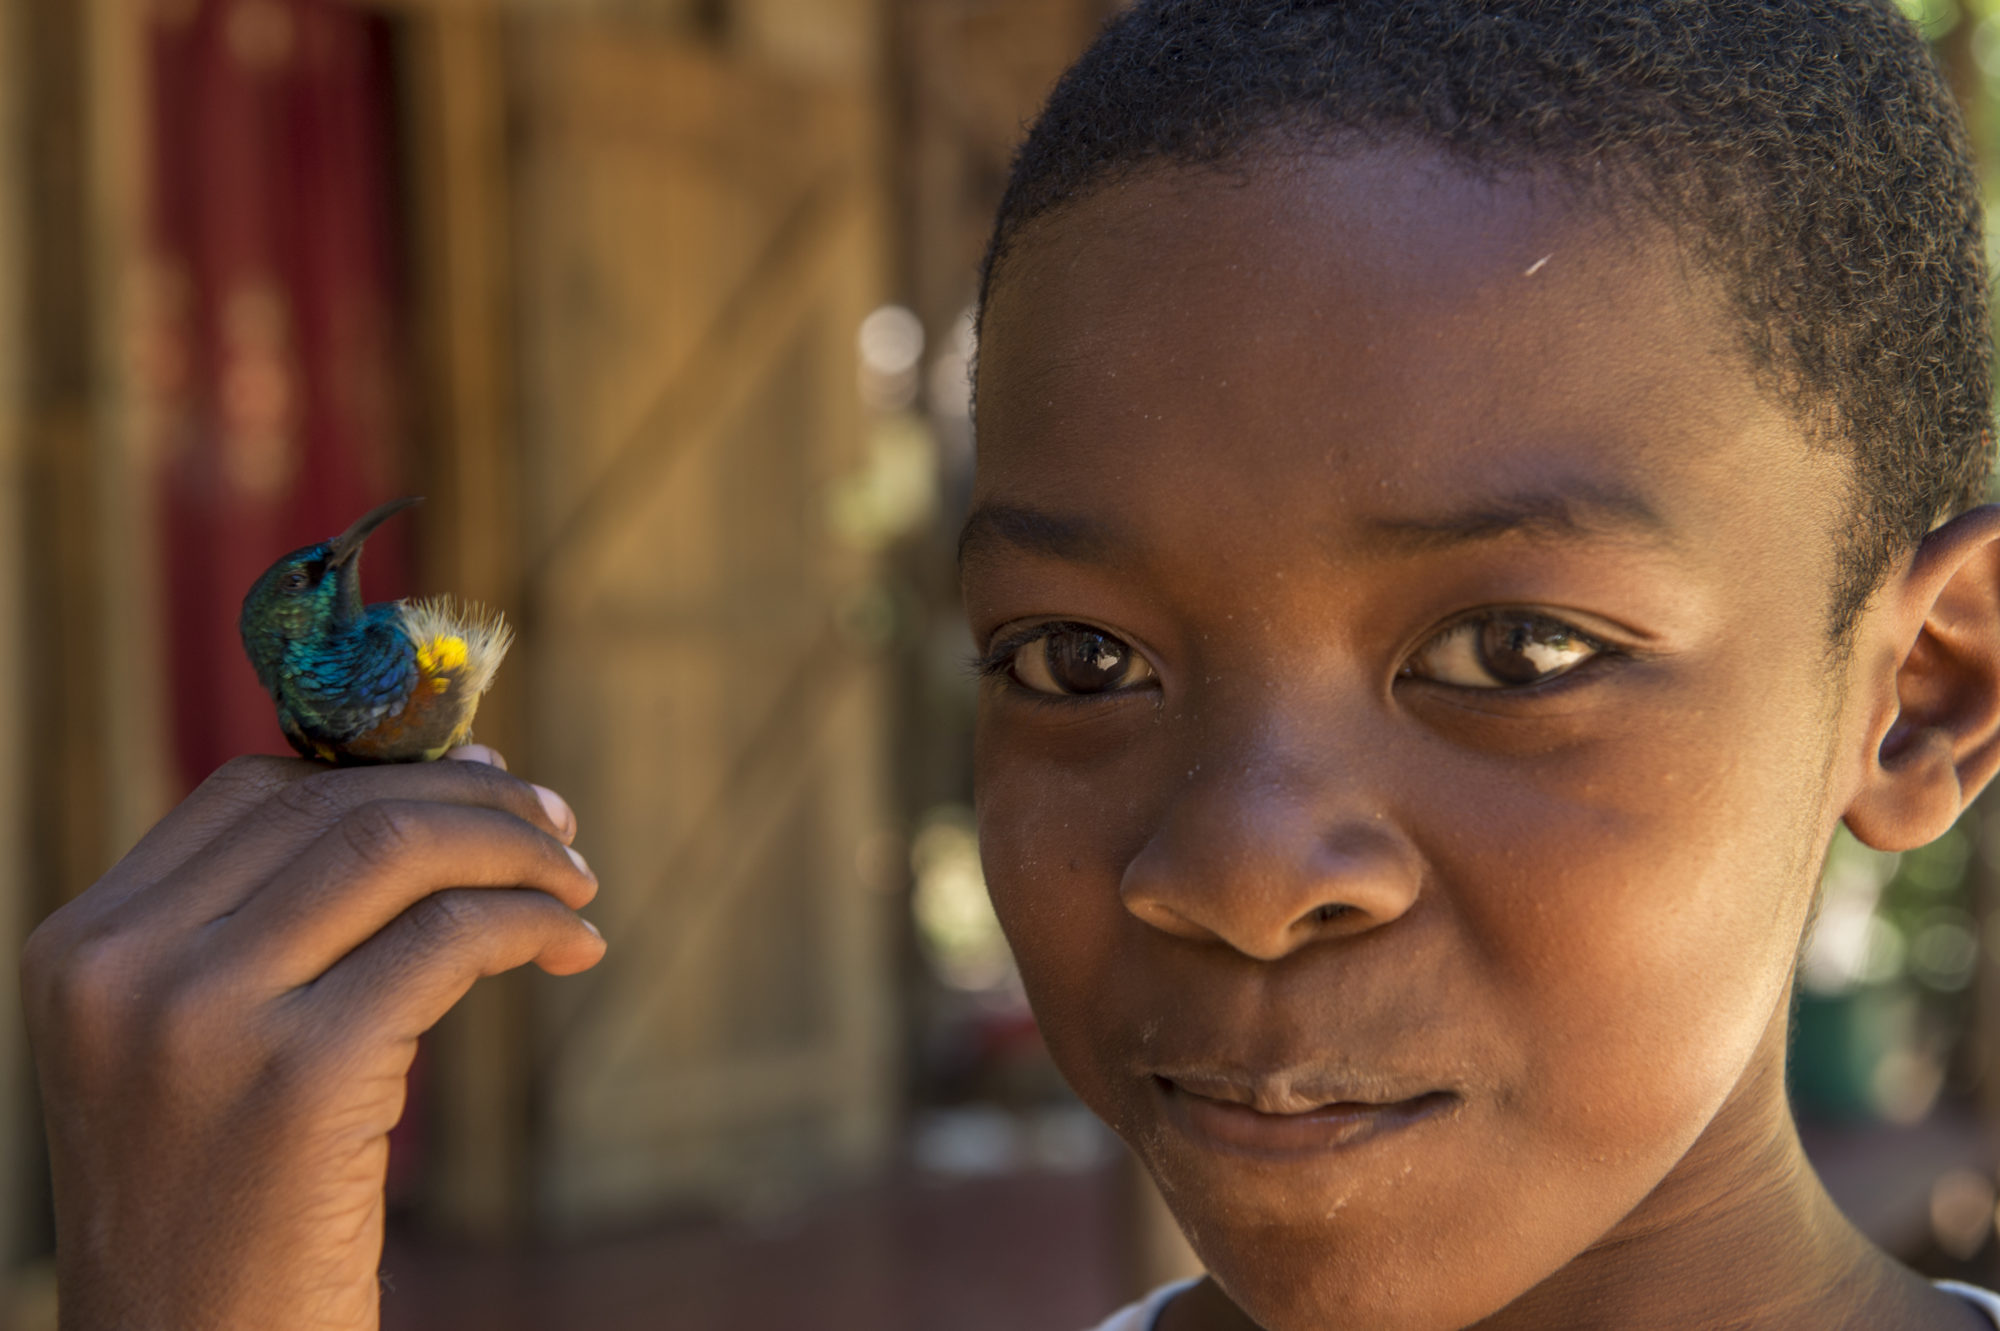 Foto di un bambino tiene in mano un colibri